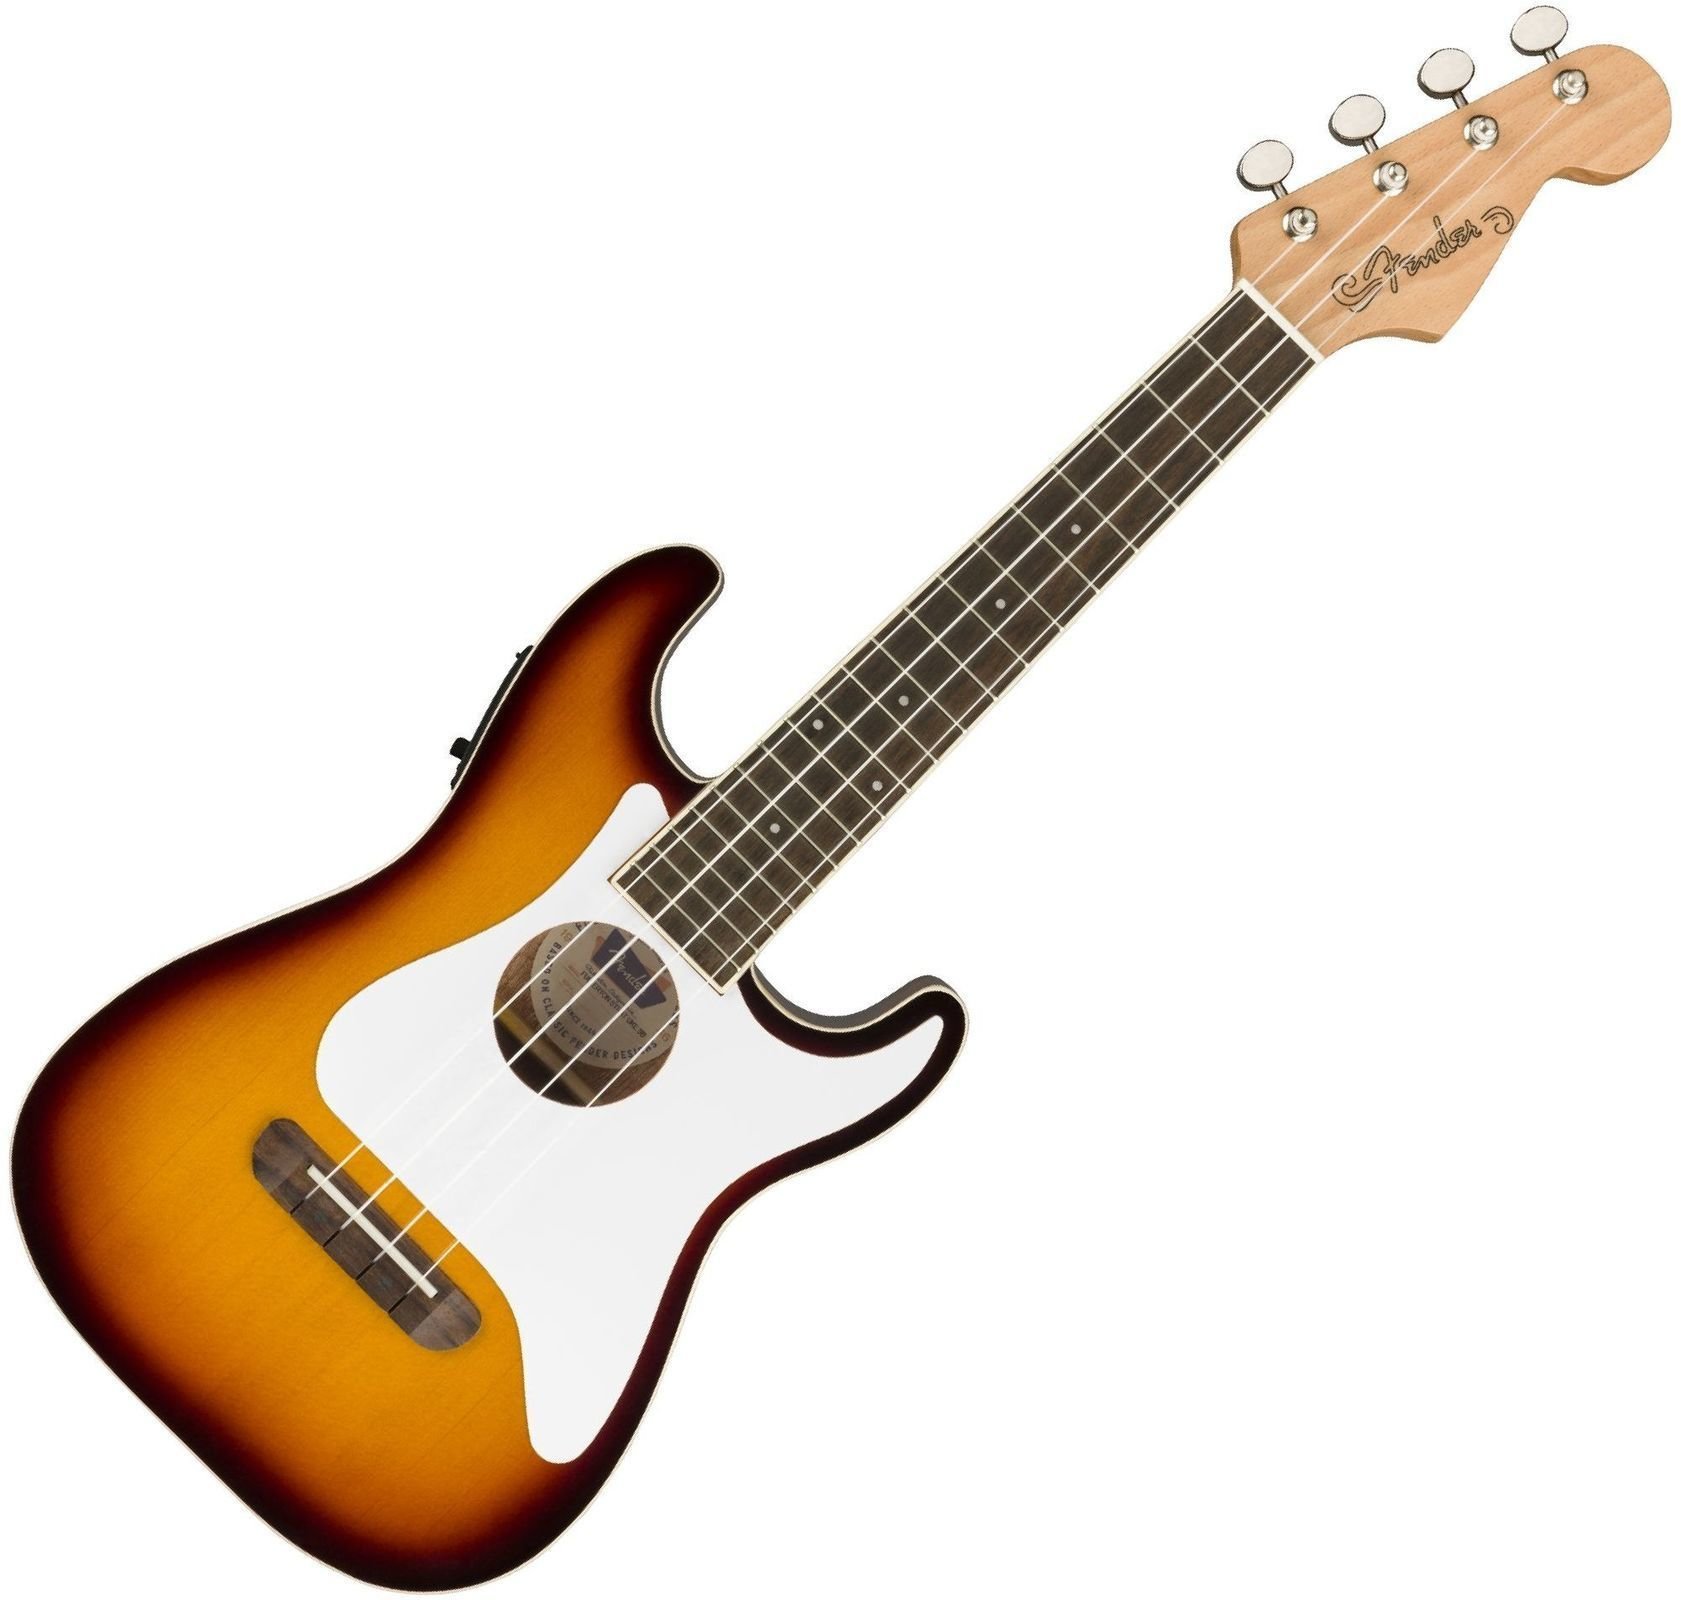 Concertukelele Fender Fullerton Stratocaster Concertukelele Sunburst